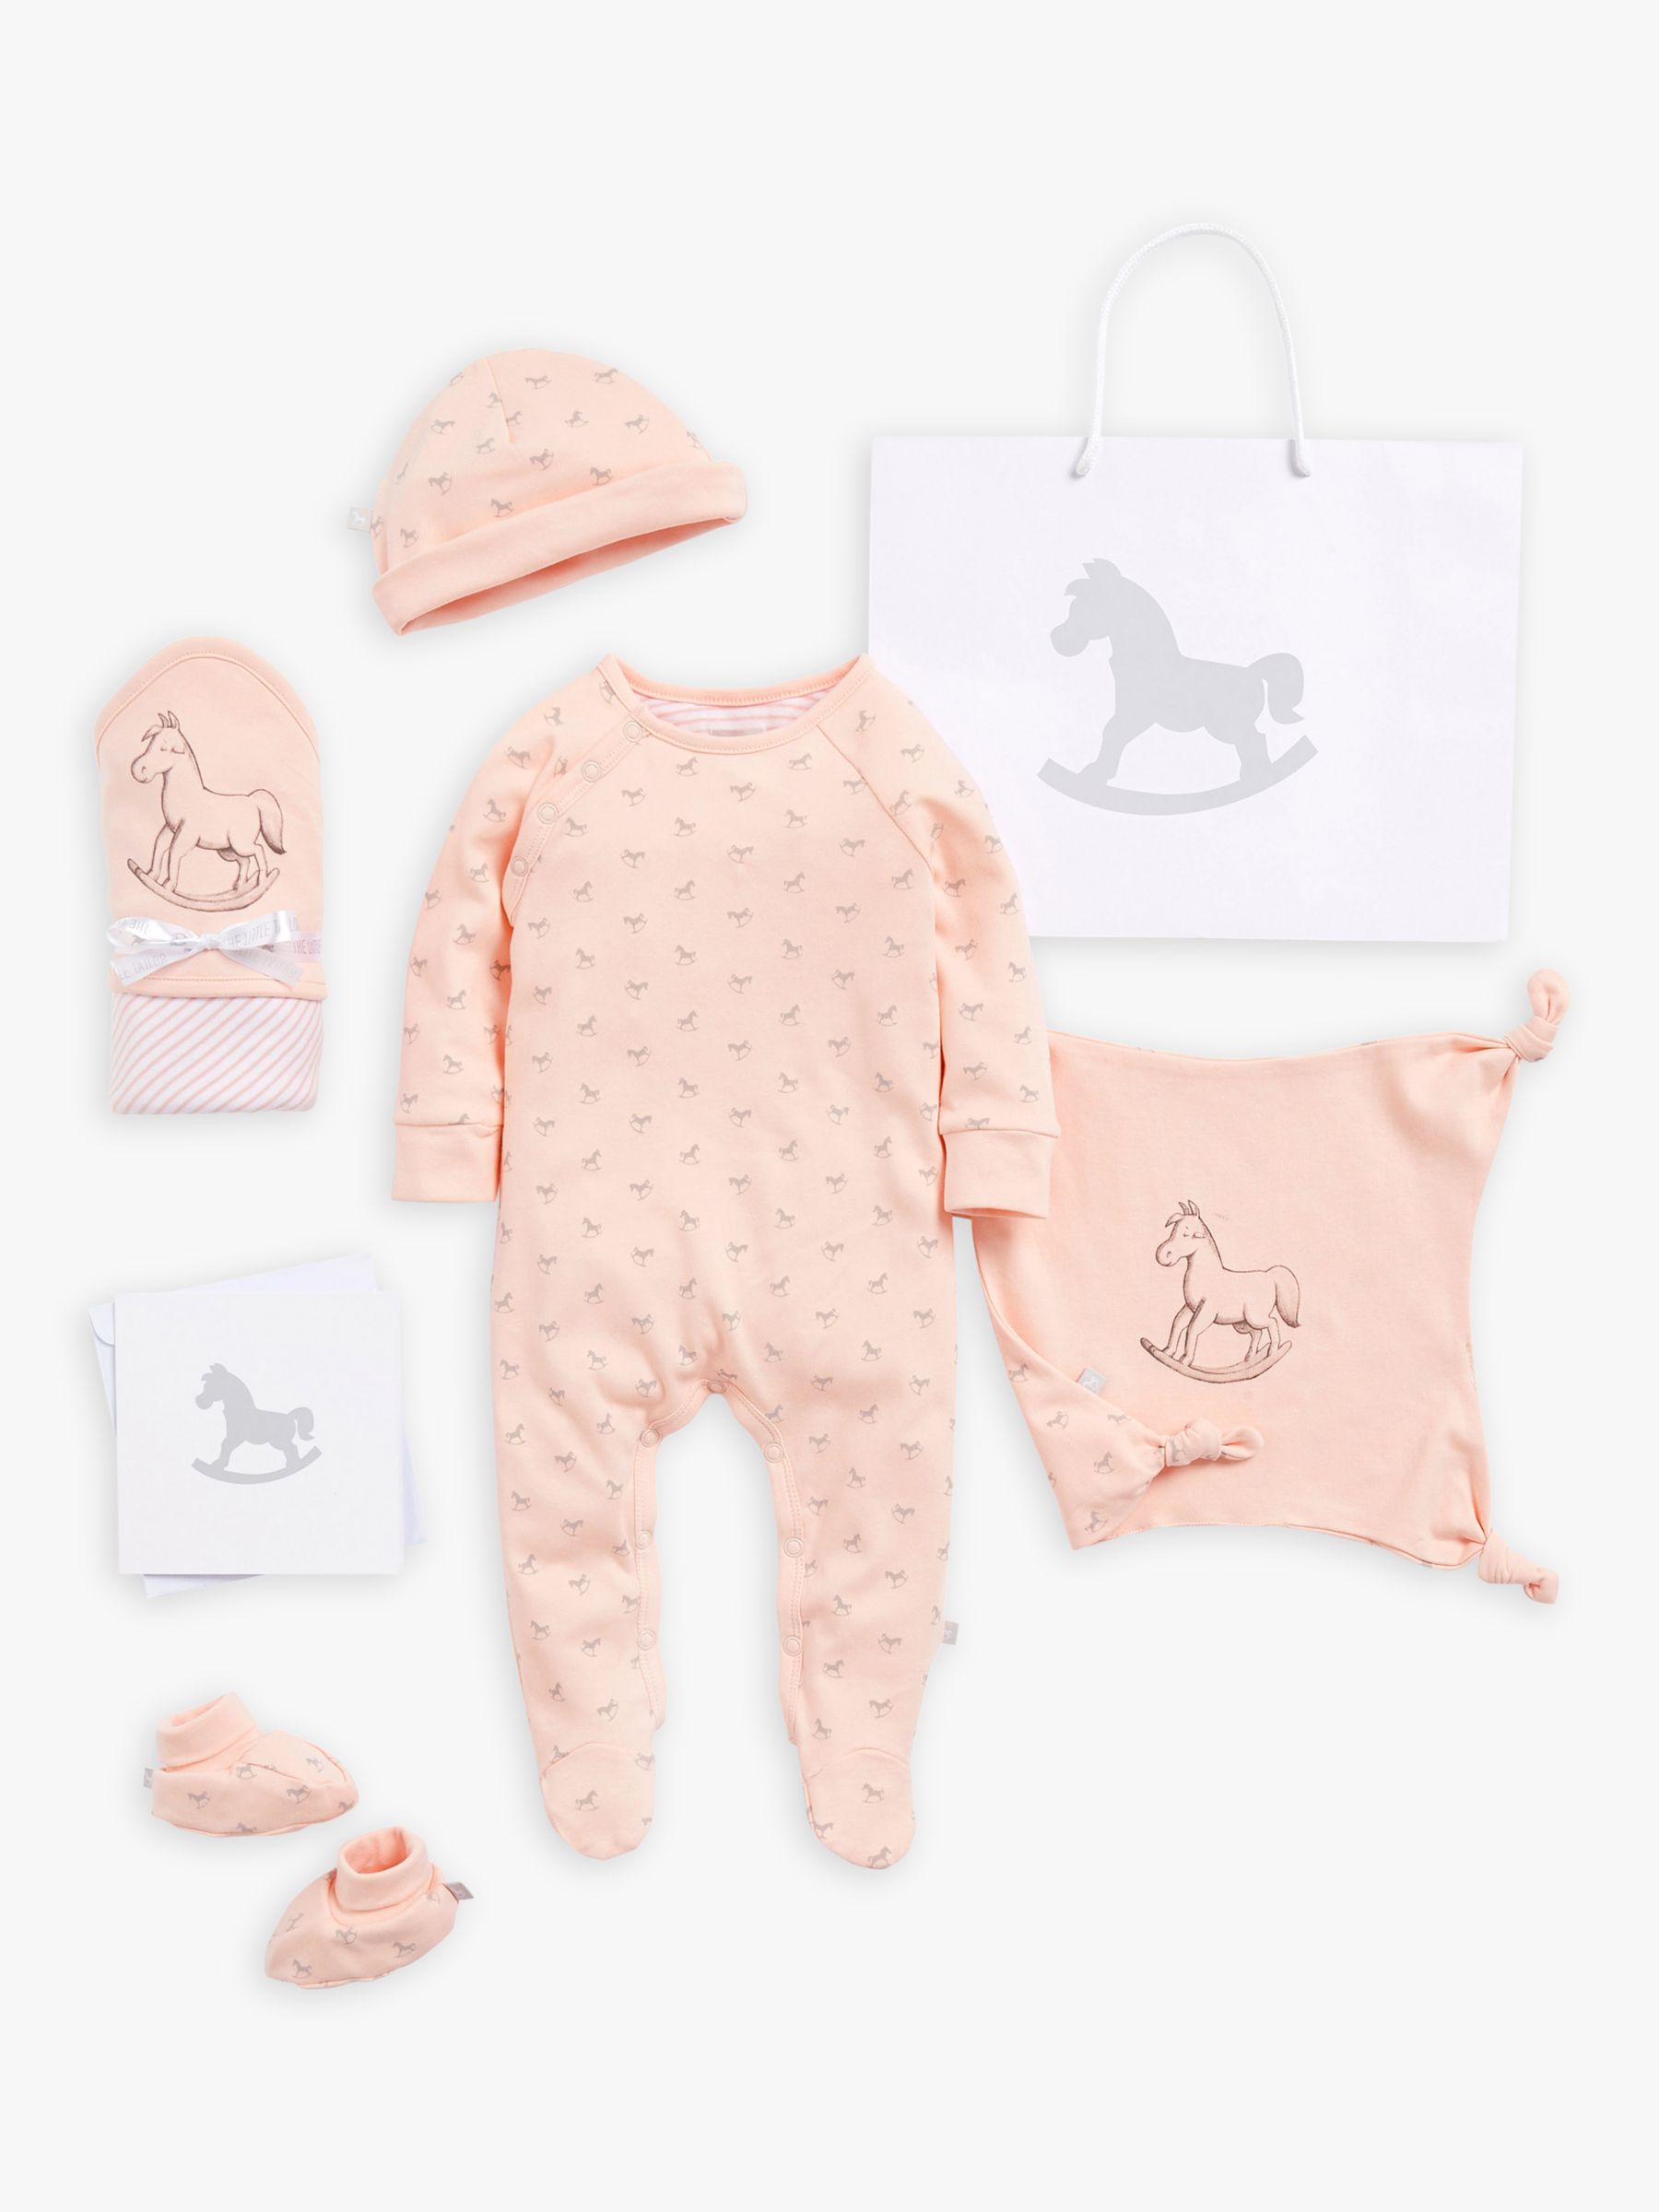 цена Супермягкий пижамный комбинезон The Little Tailor Baby, комплект из шапки, одеяла, одеяла и пинеток, розовый